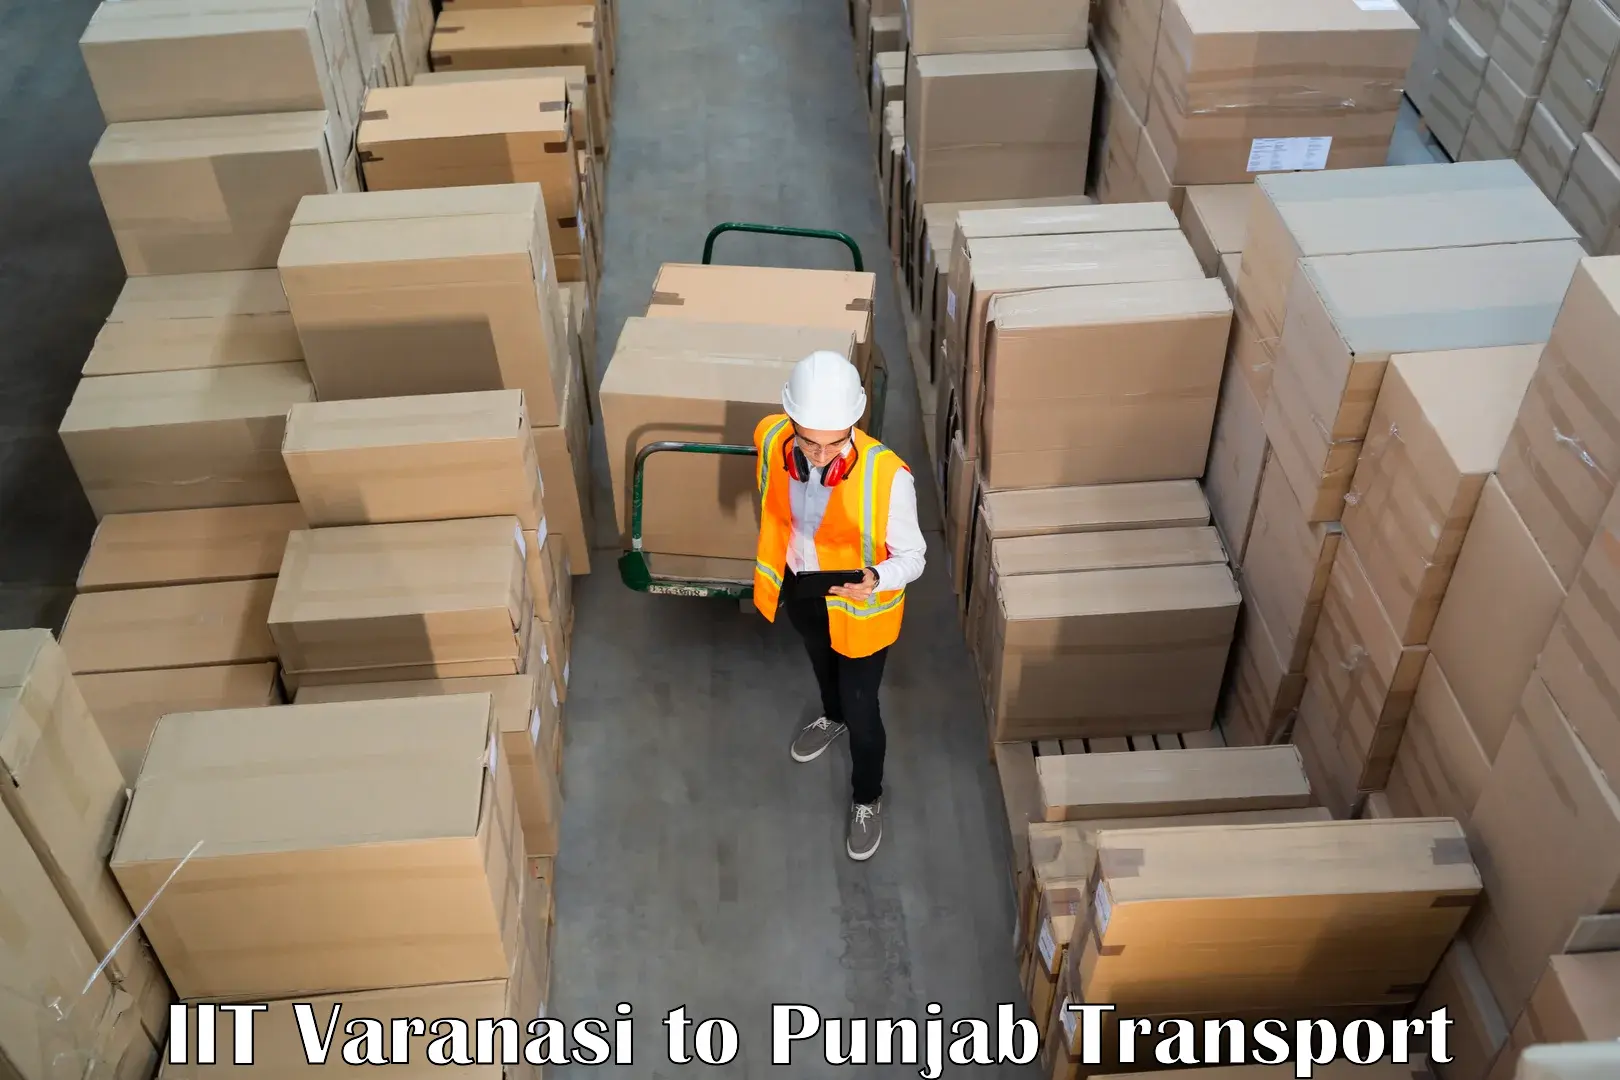 Commercial transport service IIT Varanasi to Nakodar